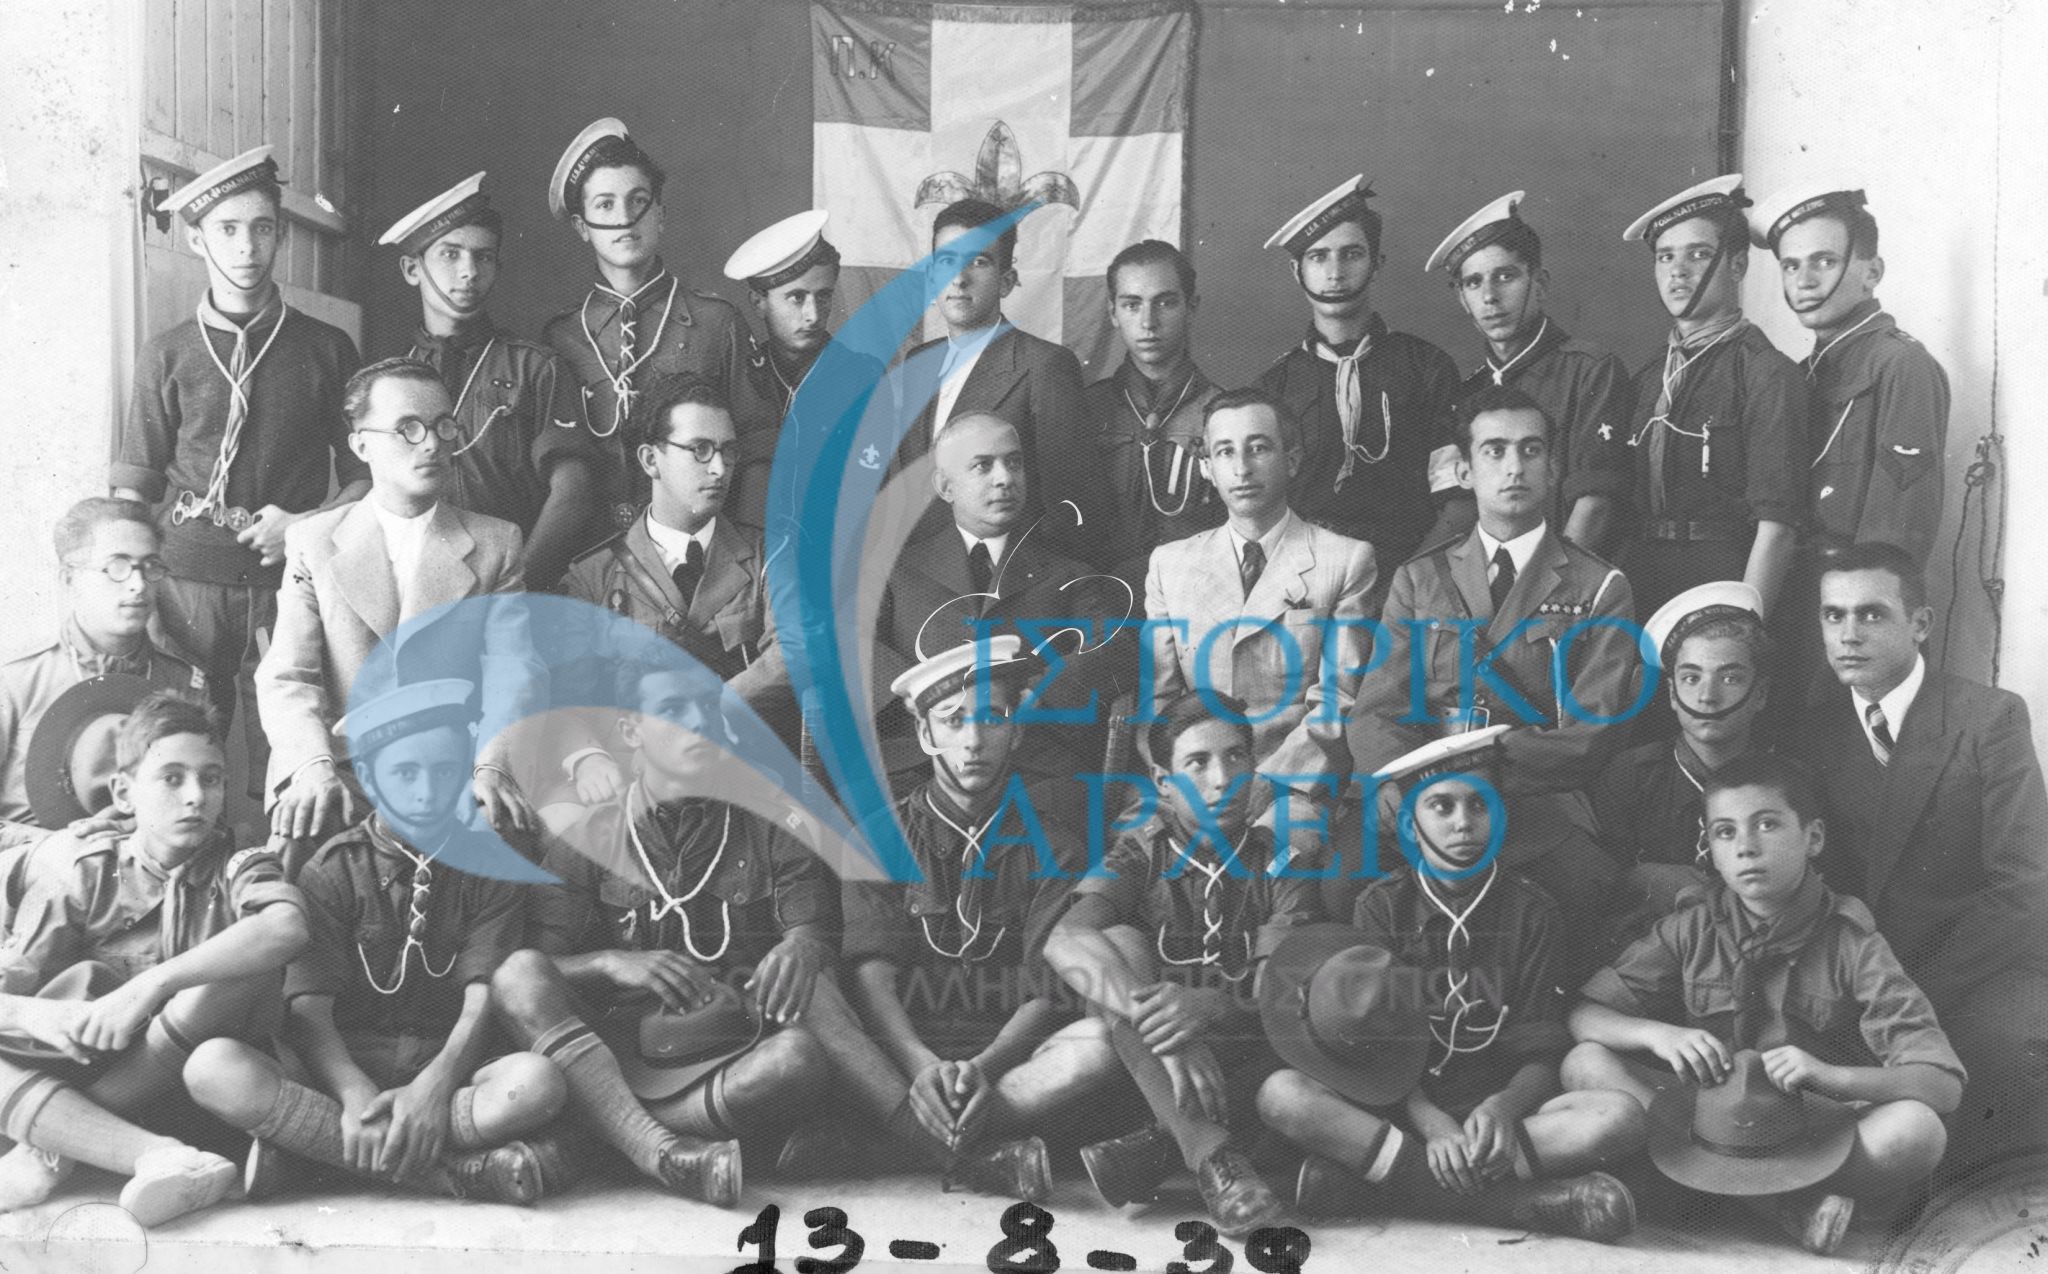 Οι τελευταίοι πρόσκοποι της Σύρου λίγο πριν την αναγκαστική συγχώνευση με την Εθνική Οργάνωση Νεολαίας ΕΟΝ τον Αύγουστο του 1939.  